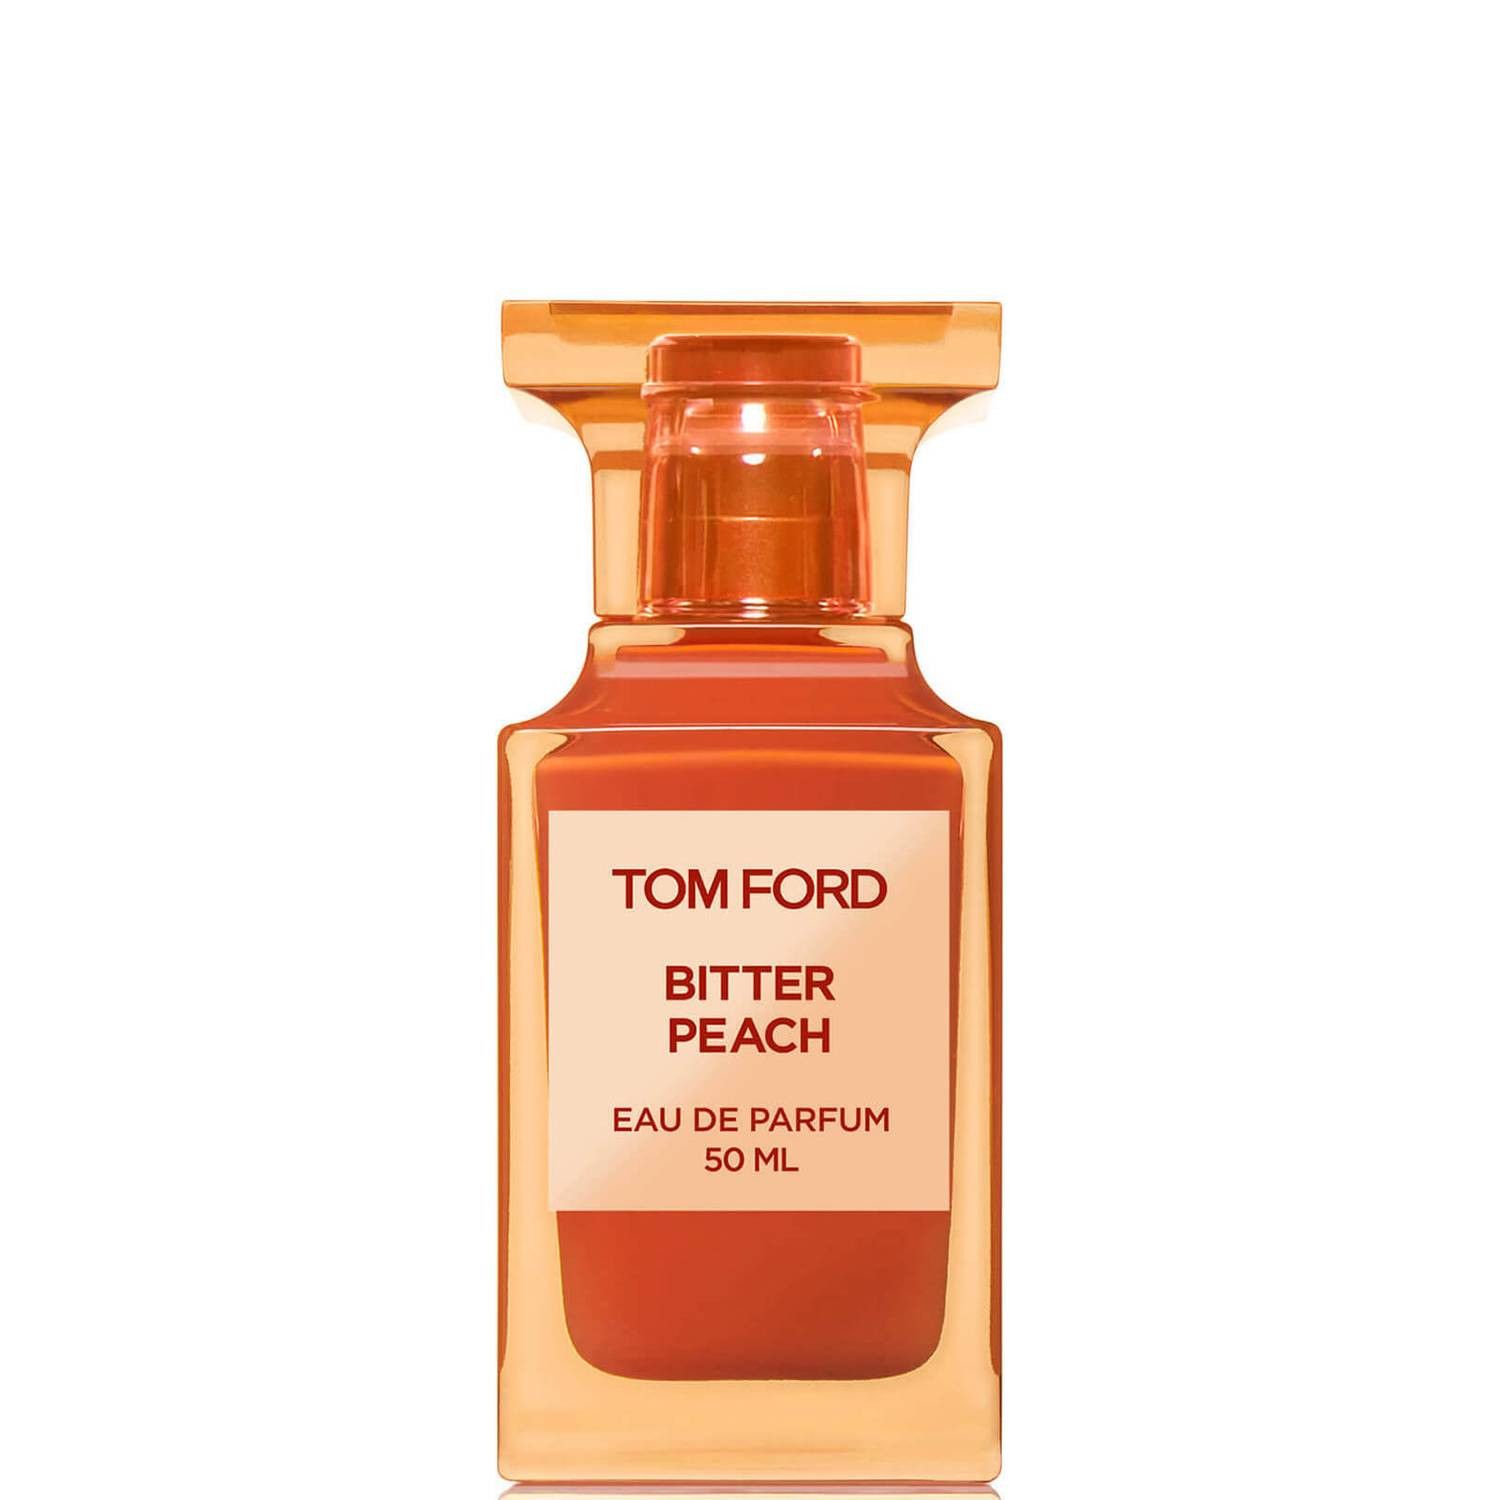 Tom Ford Bitter Peach Eau de Parfum 50ml | Look Fantastic (ROW)